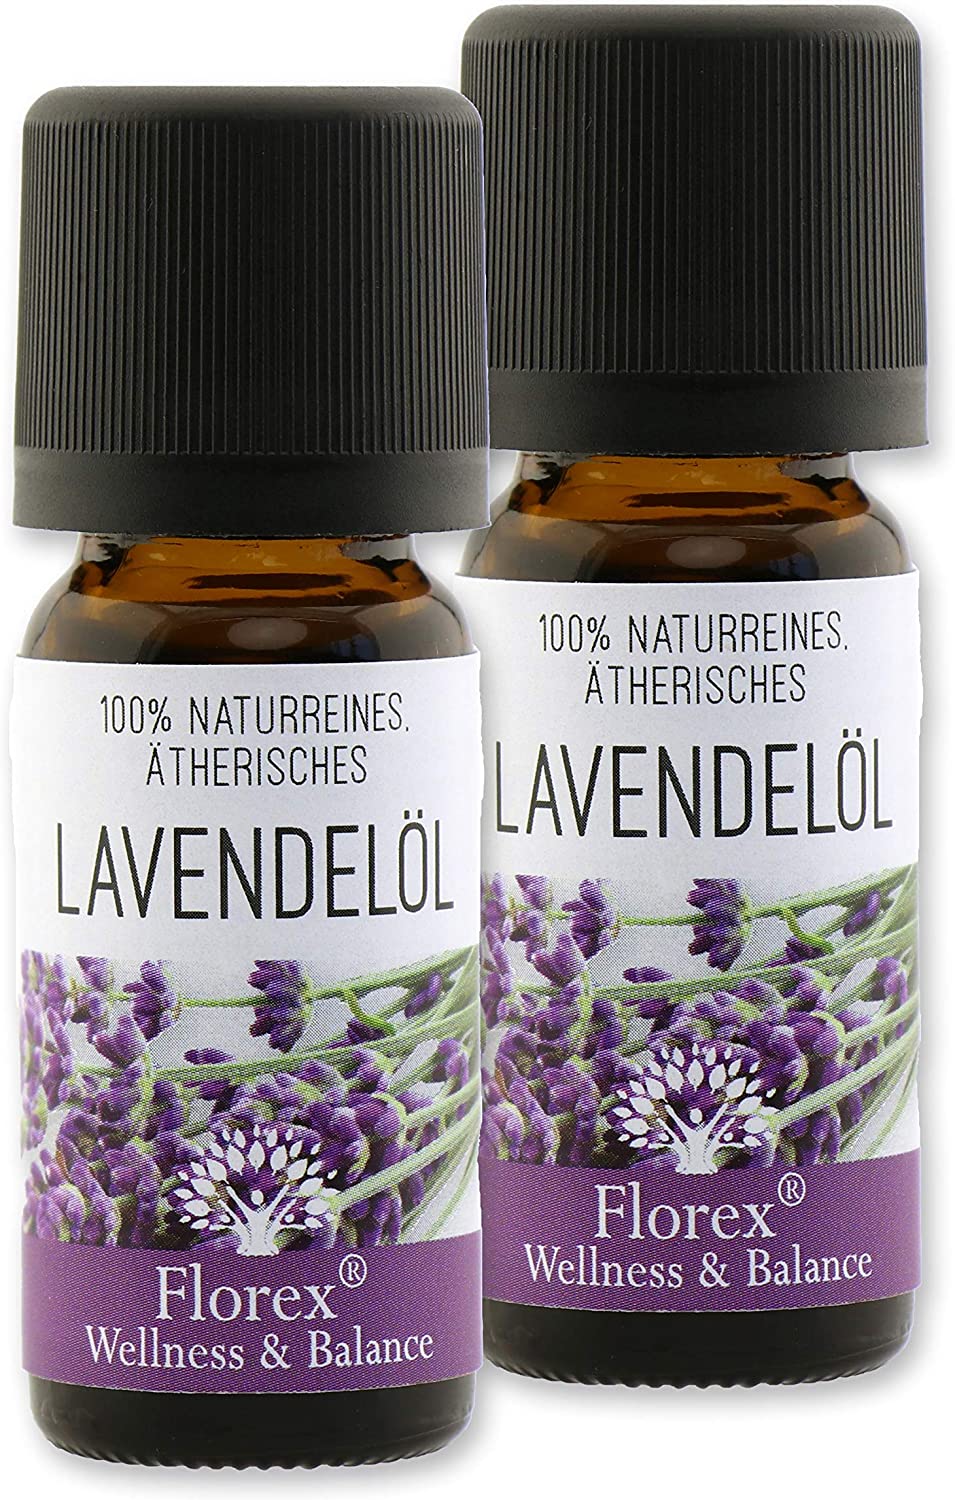 Florex 100% naturreines Ätherisches Öl Lavendelöl 2x10ml 9652LA-10-2